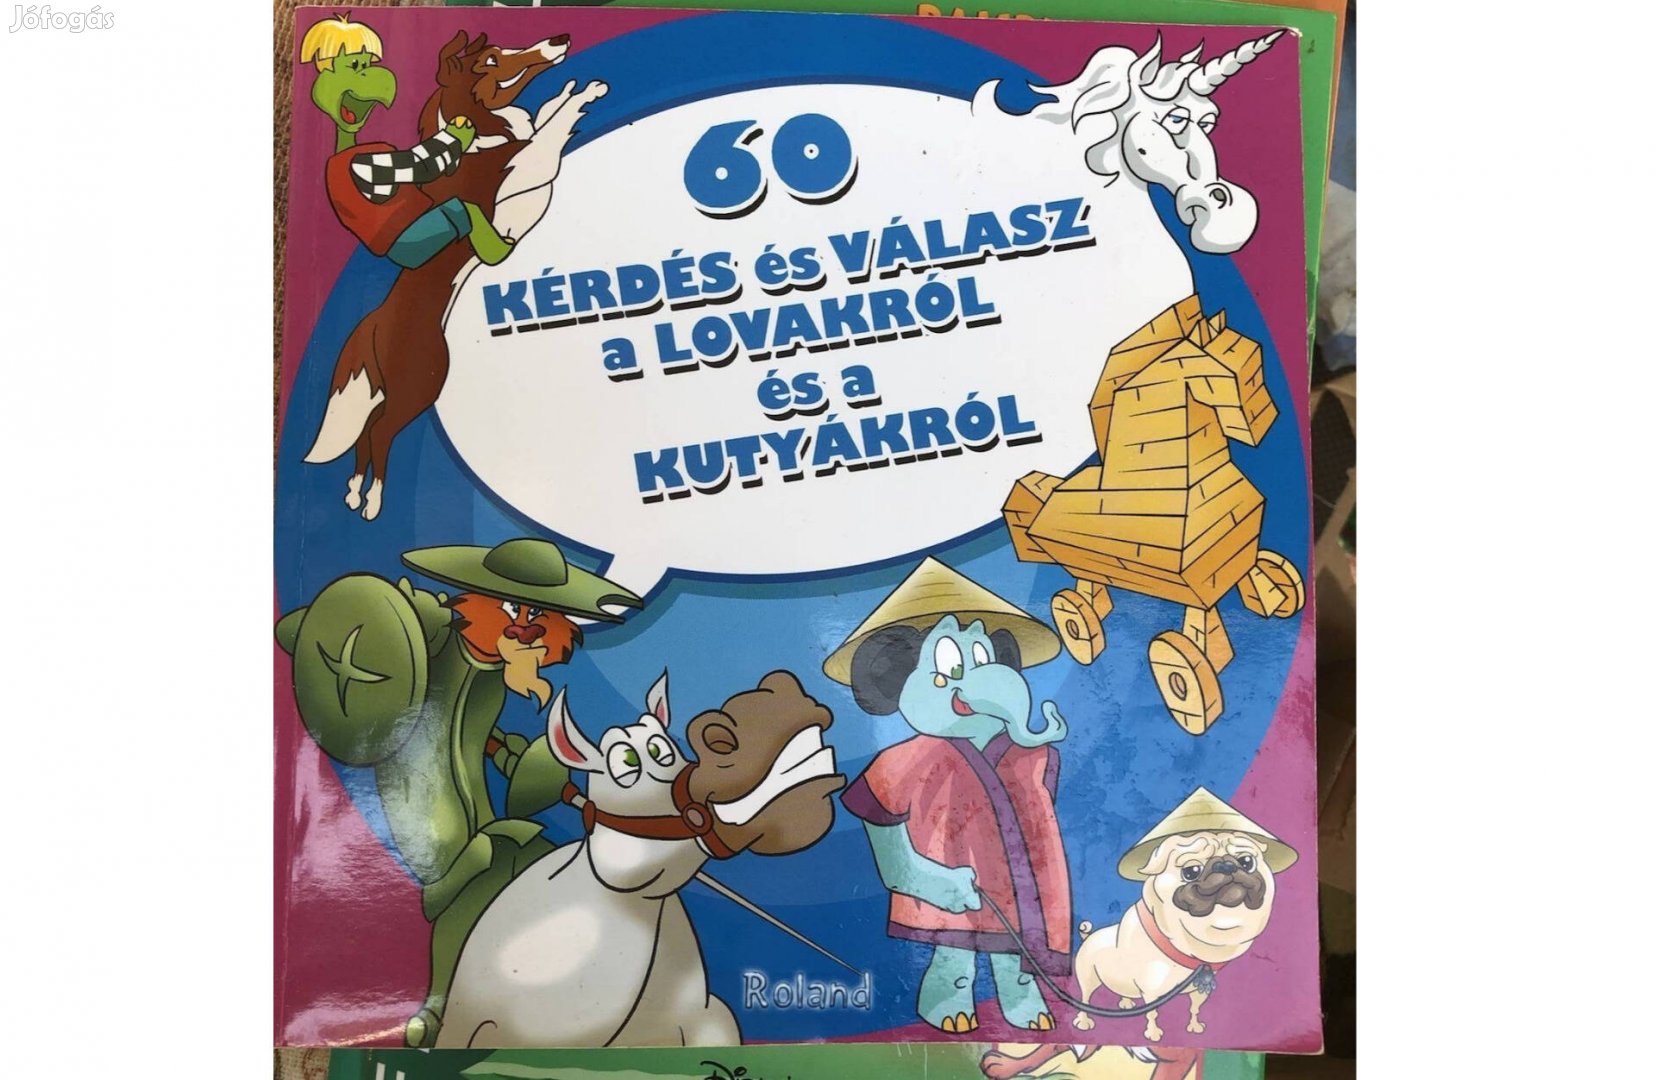 60 kérdés lovakról és kutyákról gyerekkönyv 1000 Ft